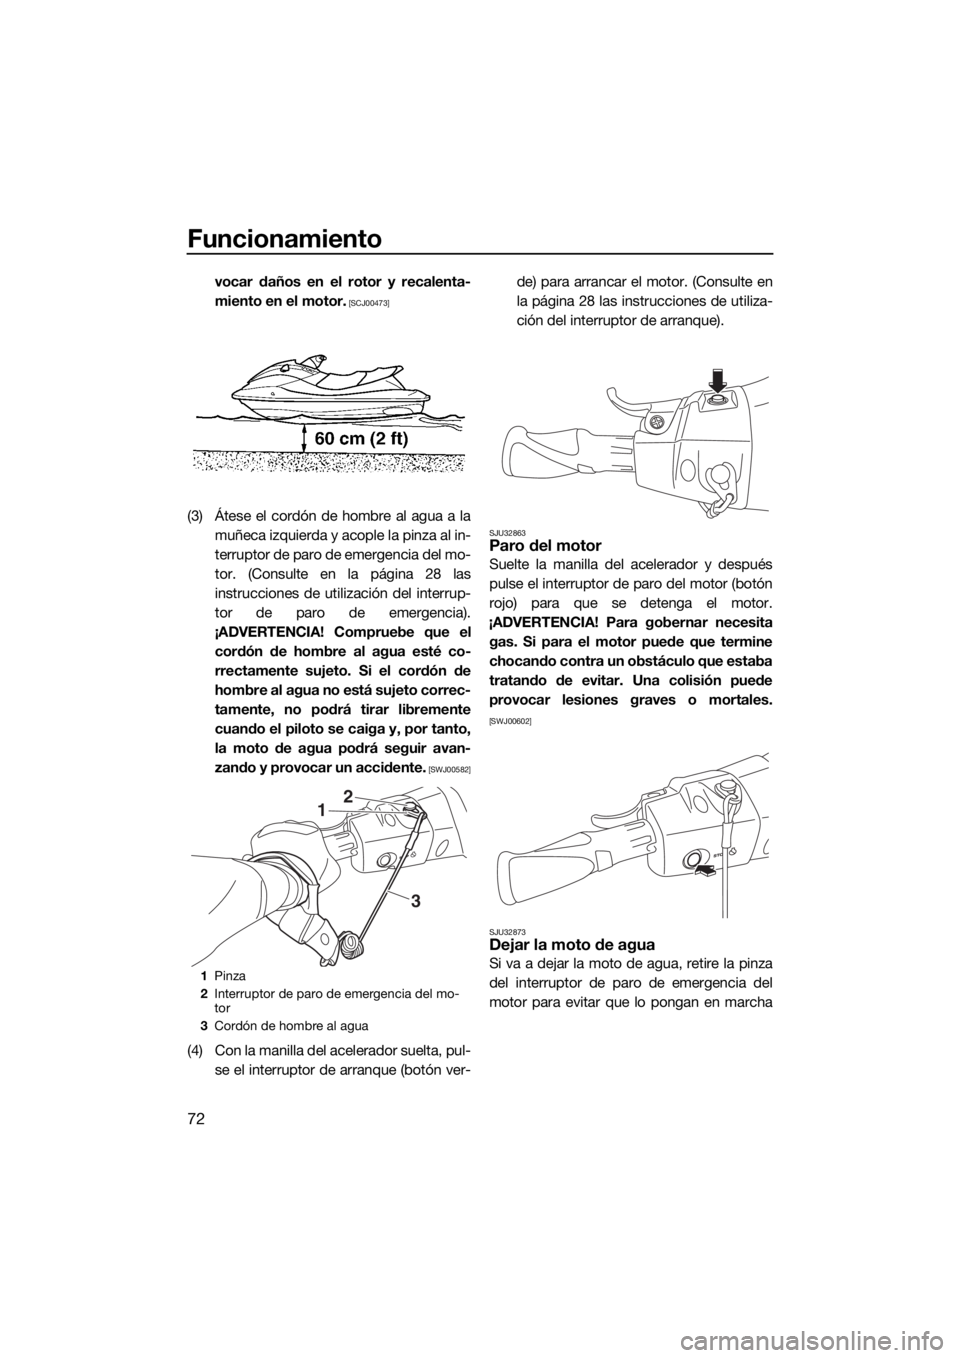 YAMAHA VX 2020  Manuale de Empleo (in Spanish) Funcionamiento
72
vocar daños en el rotor y recalenta-
miento en el motor.
 [SCJ00473]
(3) Átese el cordón de hombre al agua a la
muñeca izquierda y acople la pinza al in-
terruptor de paro de eme